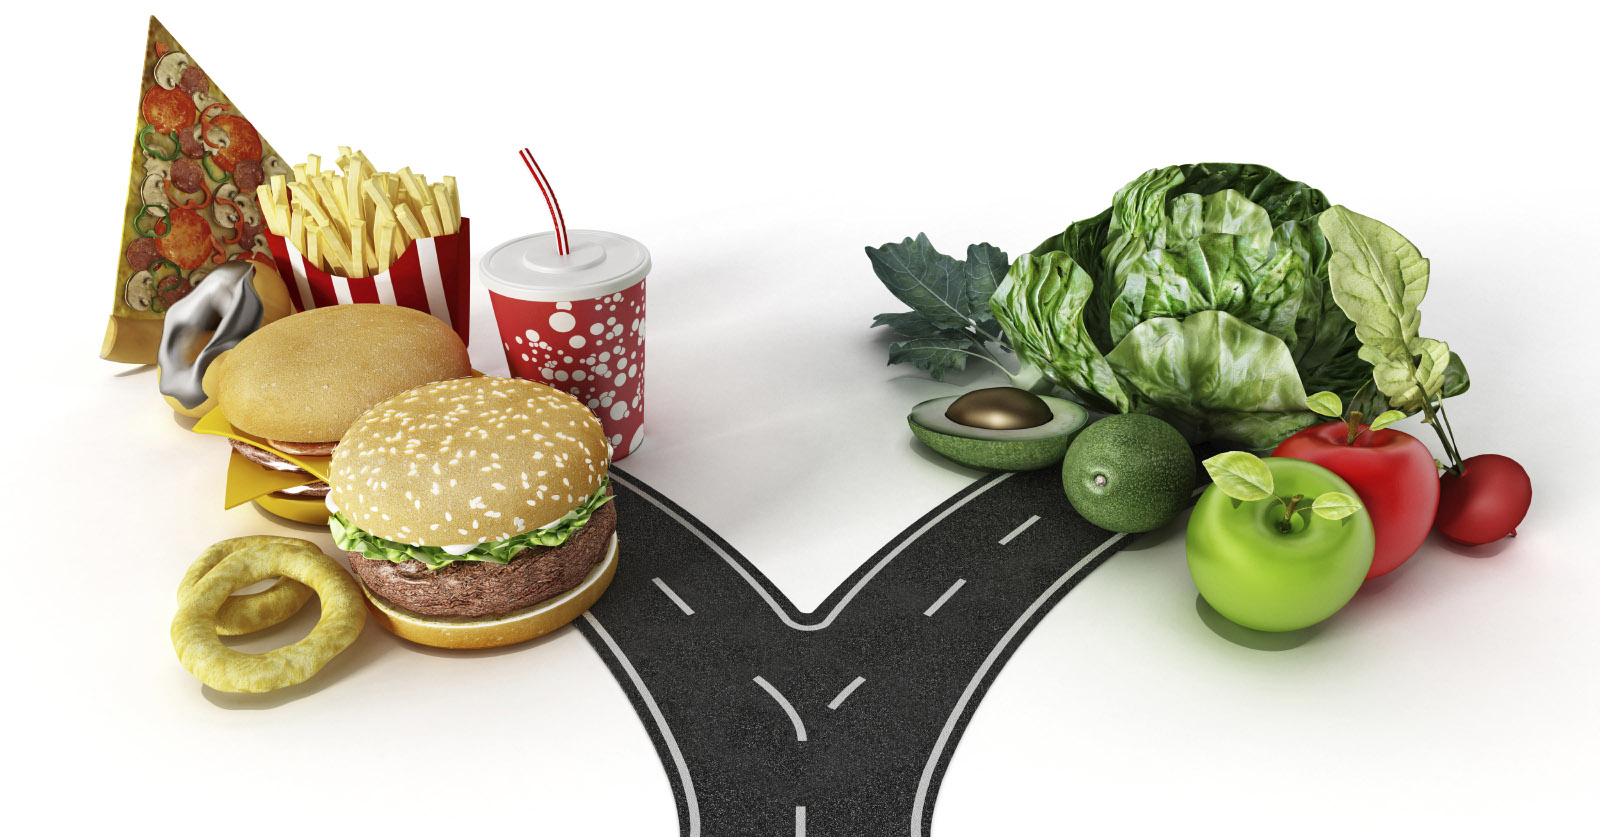 3160-junk-food-vs-healthy-food.jpg